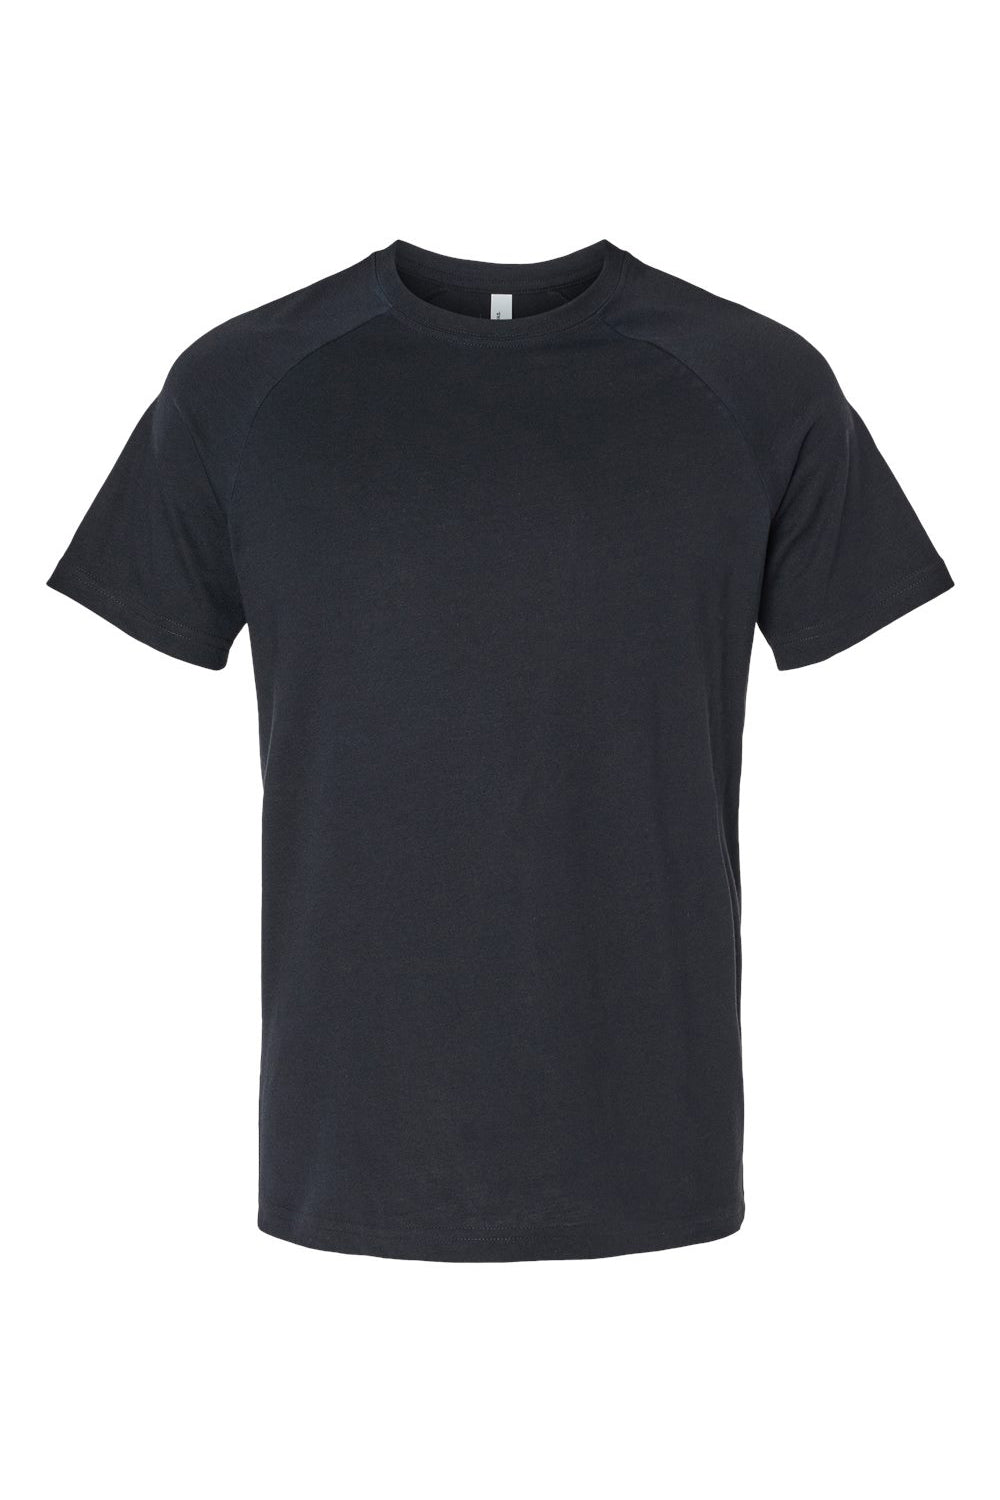 Bella + Canvas 3201 Mens CVC Raglan Short Sleeve Crewneck T-Shirt Solid Black Flat Front